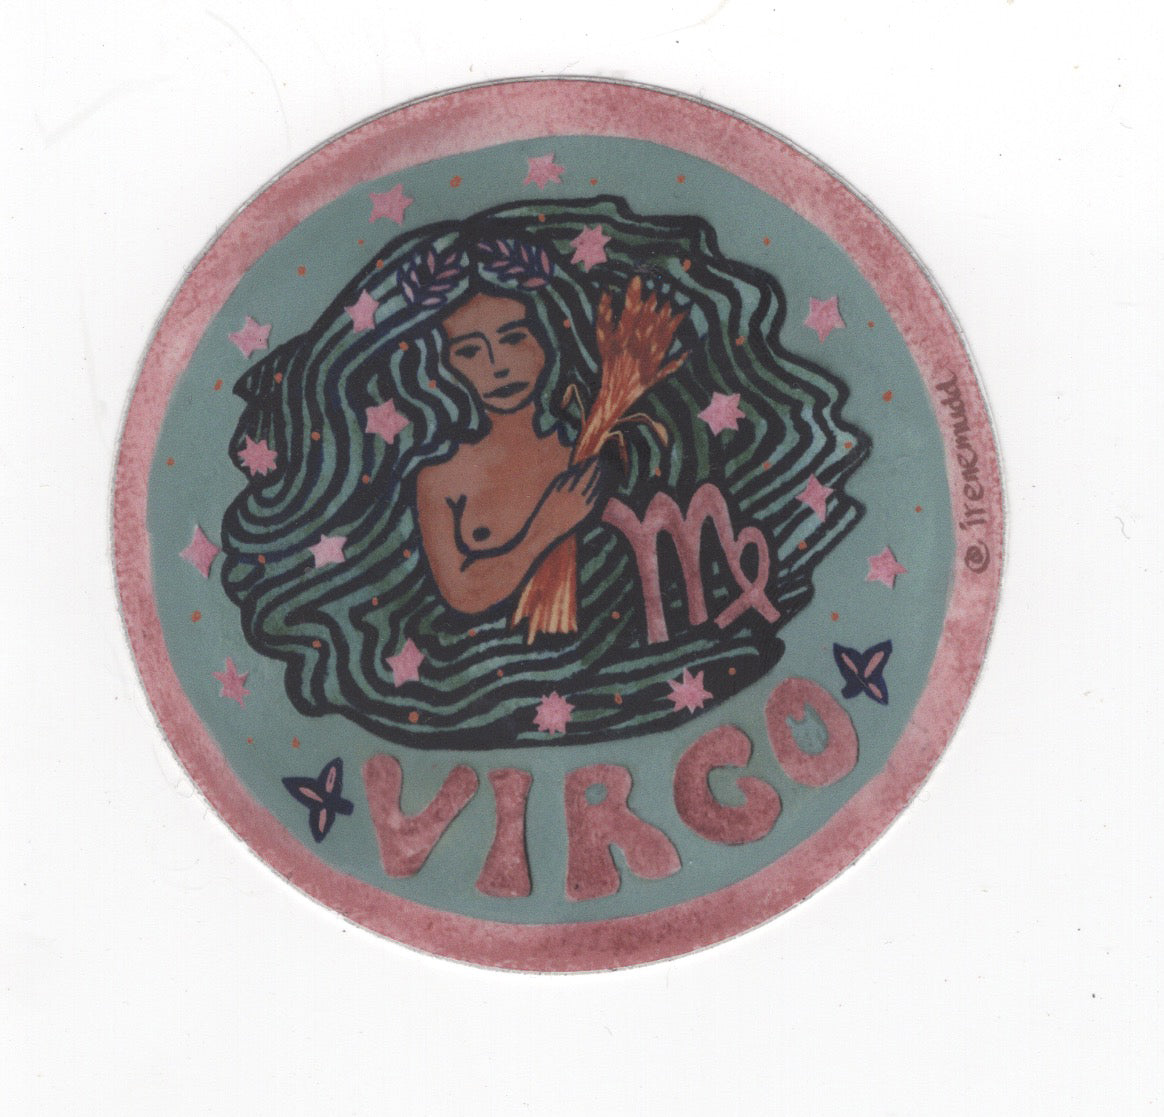 Irene Mudd - Guided Hand Studio - Virgo sticker